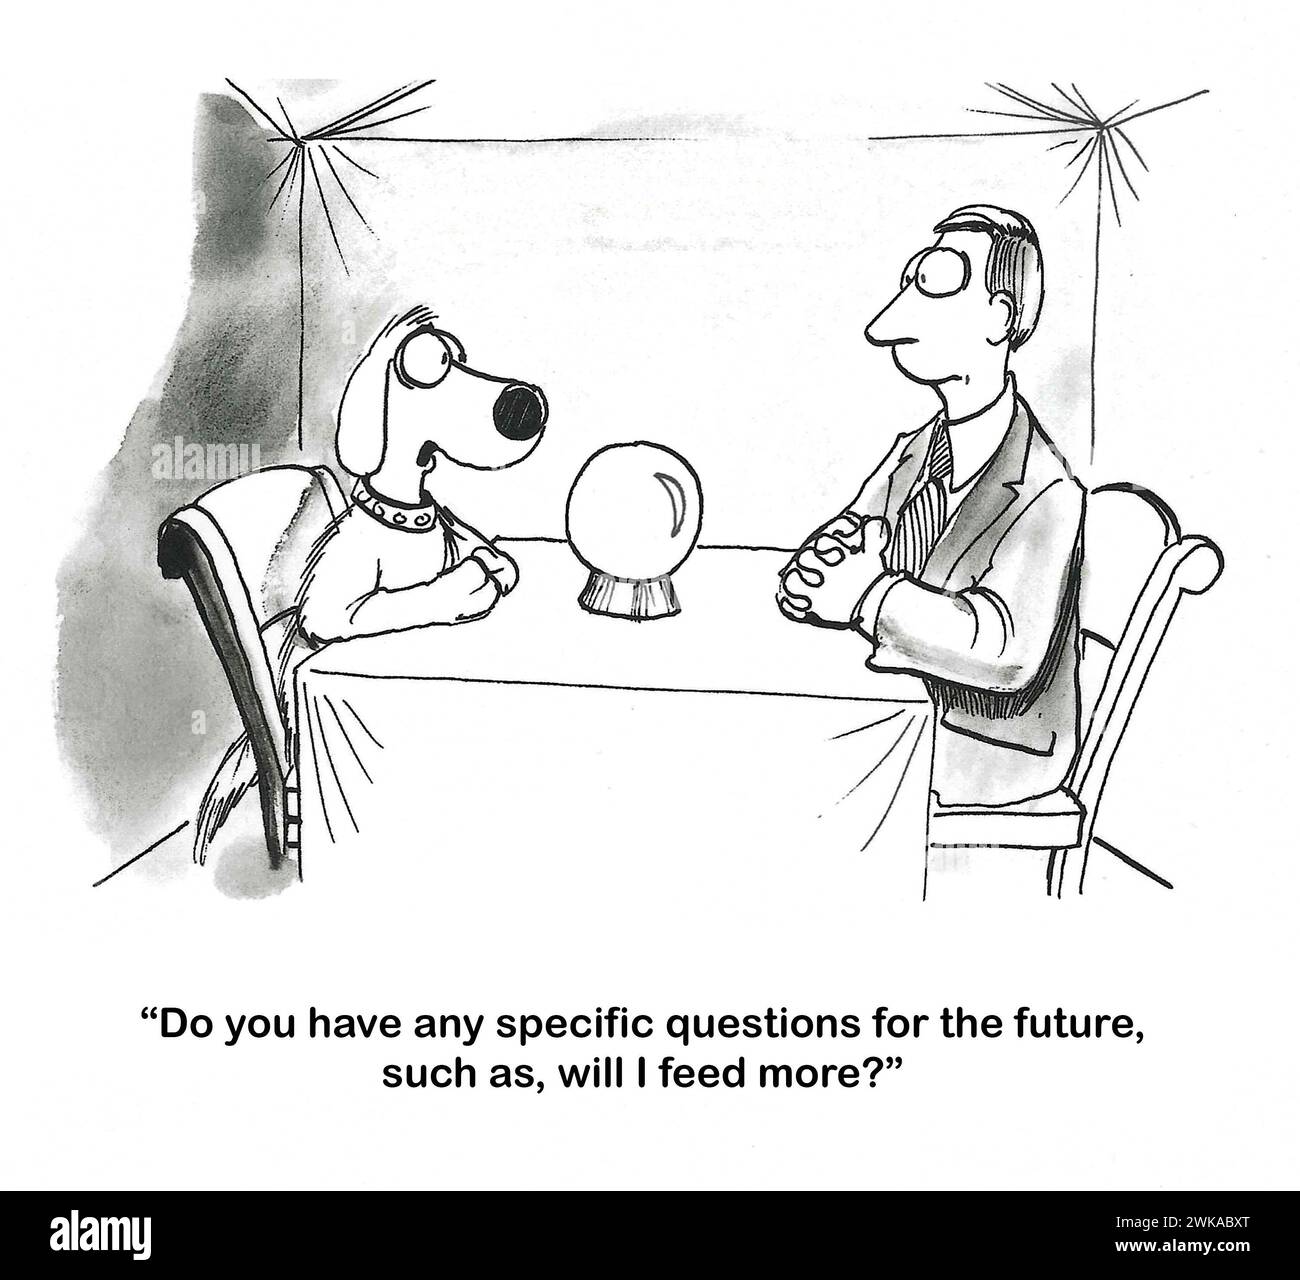 BW-Zeichentrick eines Hundes-Zigeuner-Wahrsagers, der den Mann fragt, ob der Erzähler vorhersagen sollte, ob der Besitzer in Zukunft häufiger Nahrung nehmen wird. Stockfoto